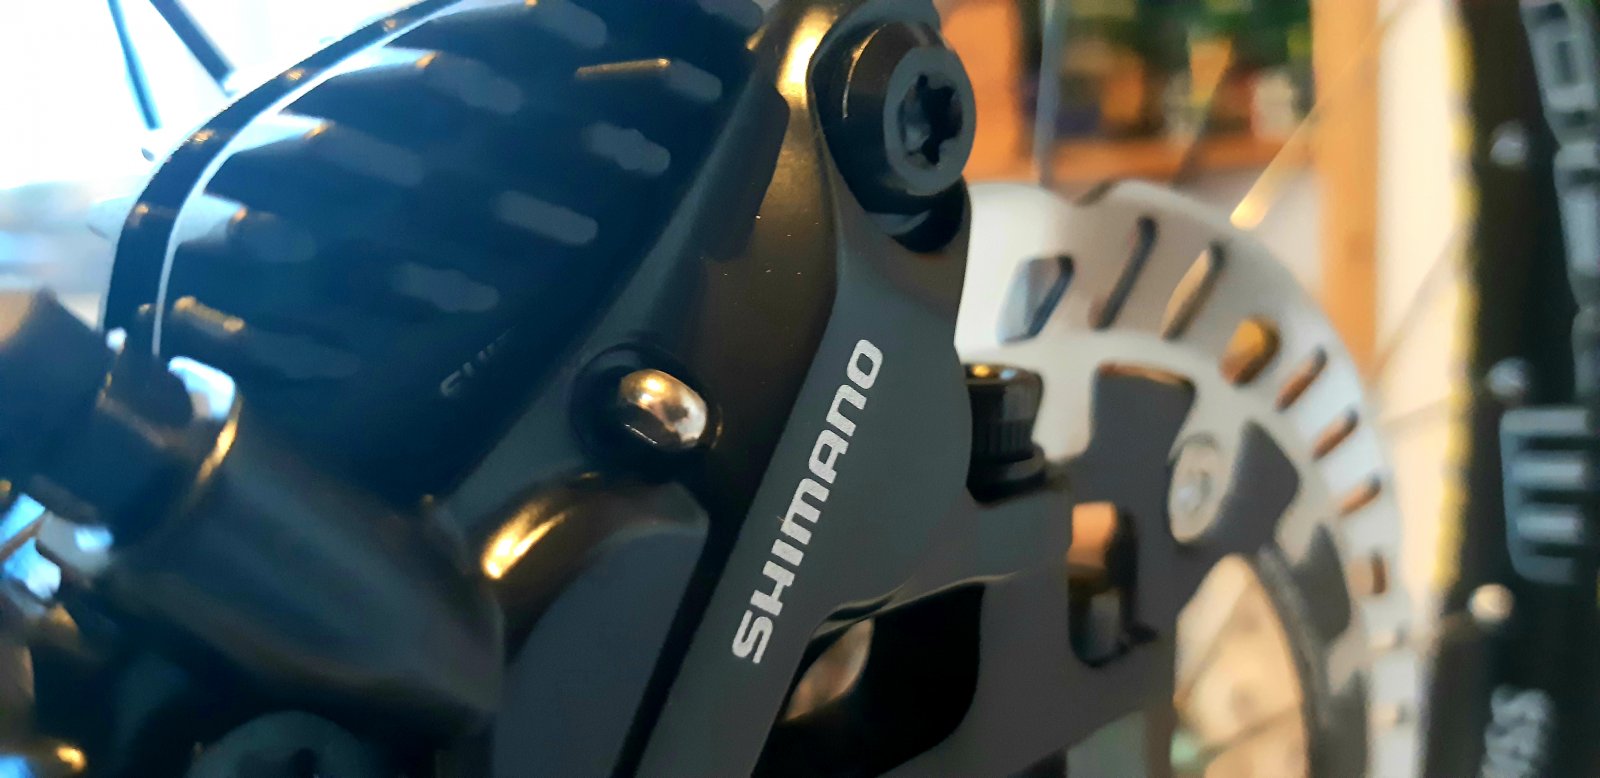 Erfahrungen mit Shimano BR-MT520 4 Kolben Bremssattel? | Seite 18 |  MTB-News.de